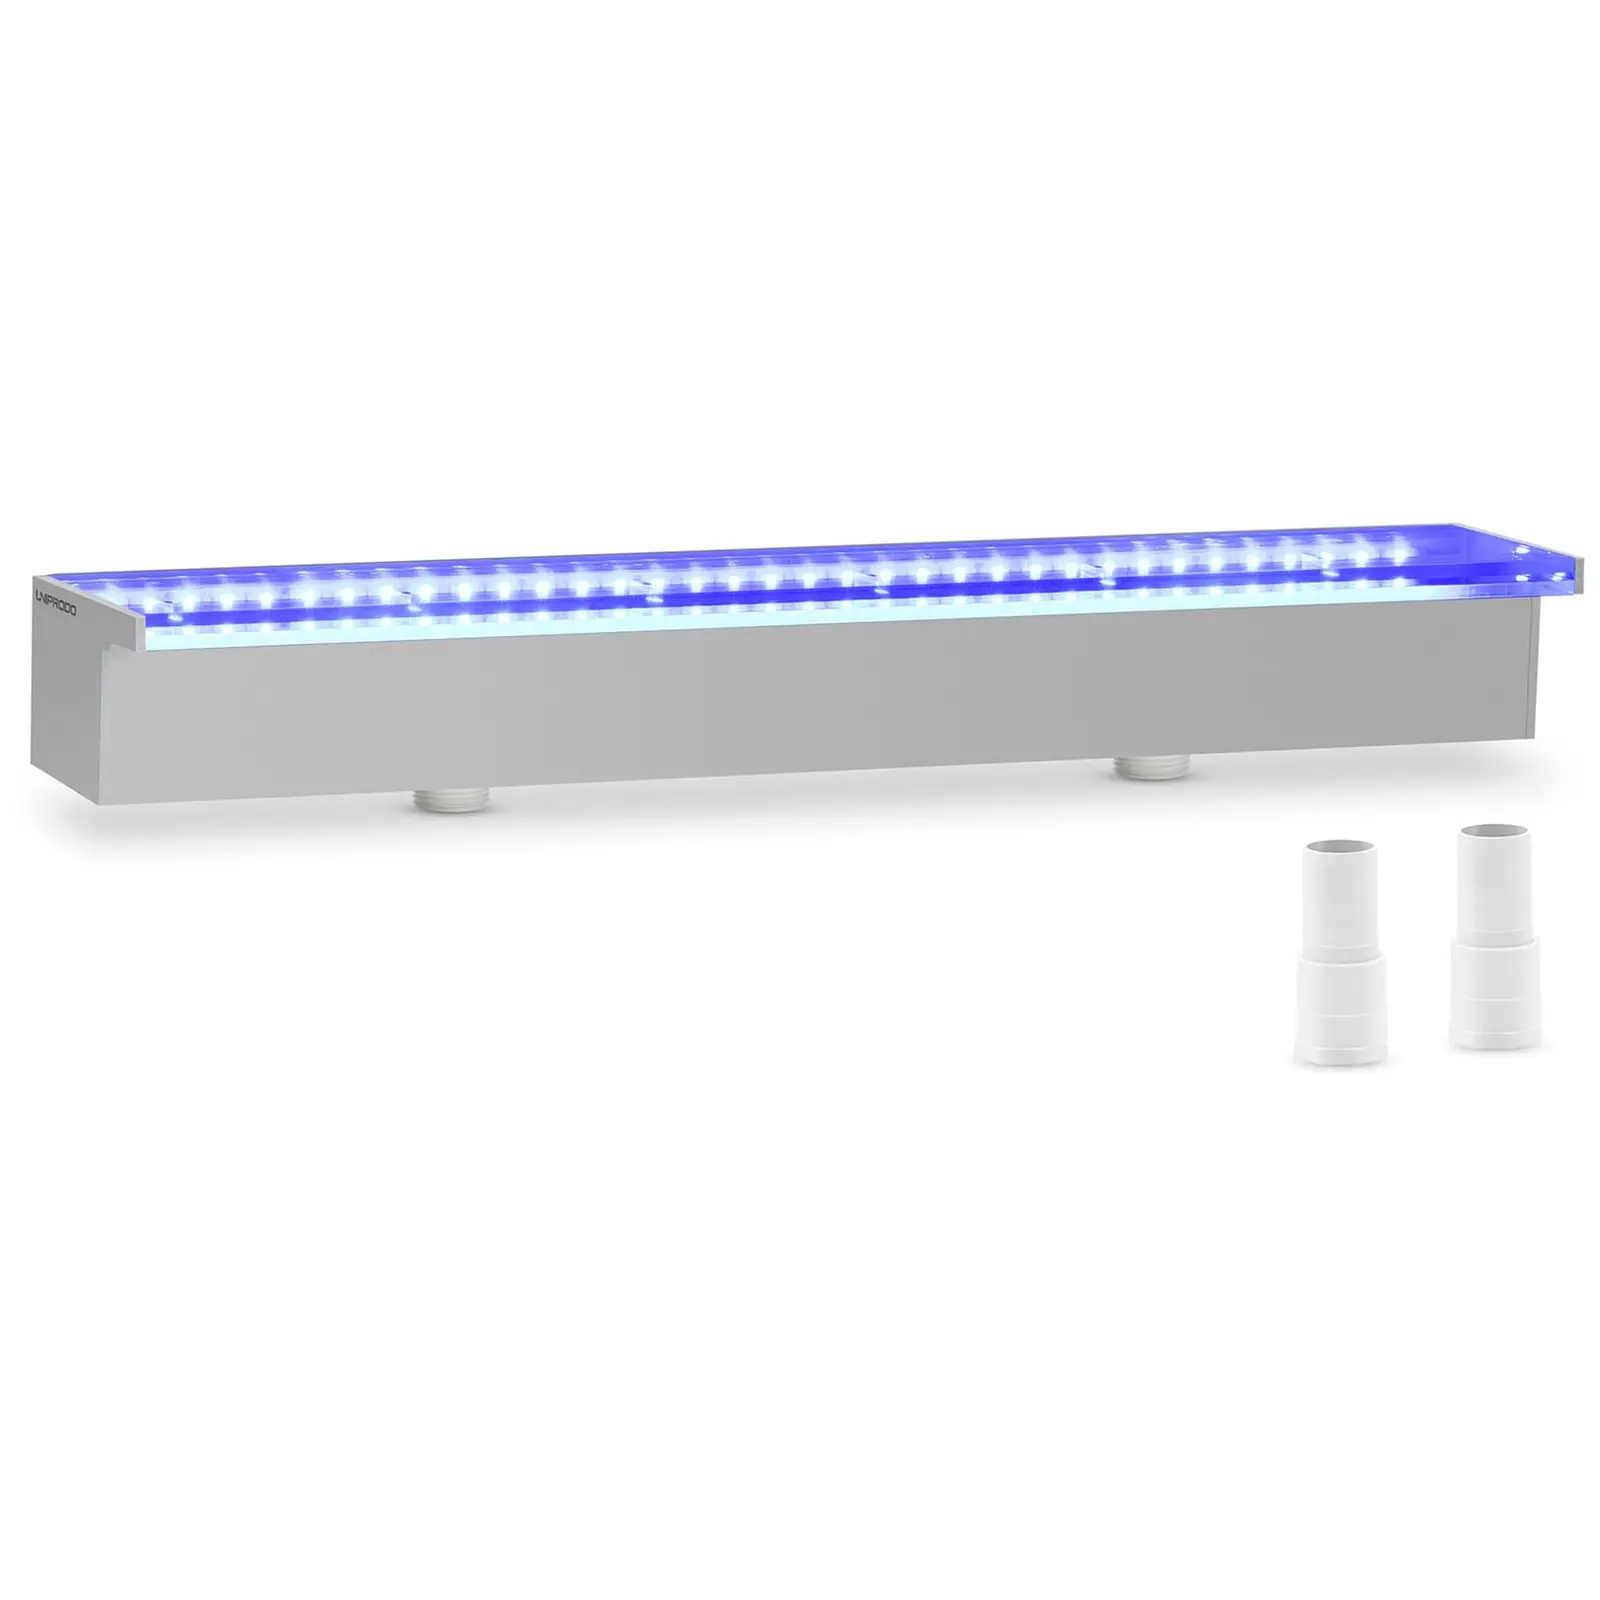 Ντους υπερχείλισης - 60 cm - Φωτισμός LED - Μπλε / Λευκό - {{Lip_lenght}} mm έξοδος νερού